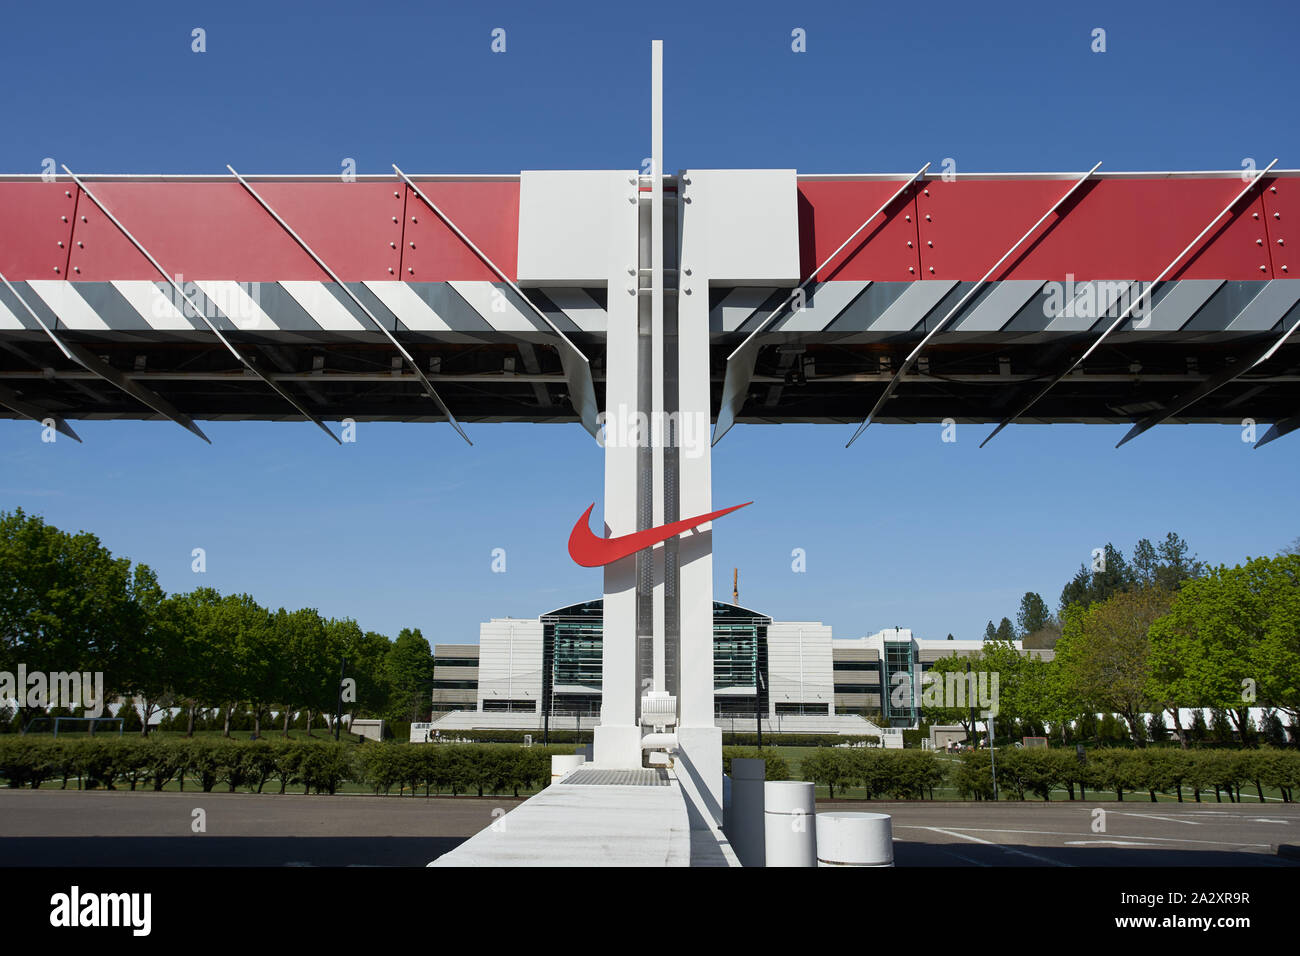 Le logo Nike « Swoosh » est visible à l'une des entrées du siège social  mondial de Nike à Beaverton, Oregon, États-Unis Photo Stock - Alamy